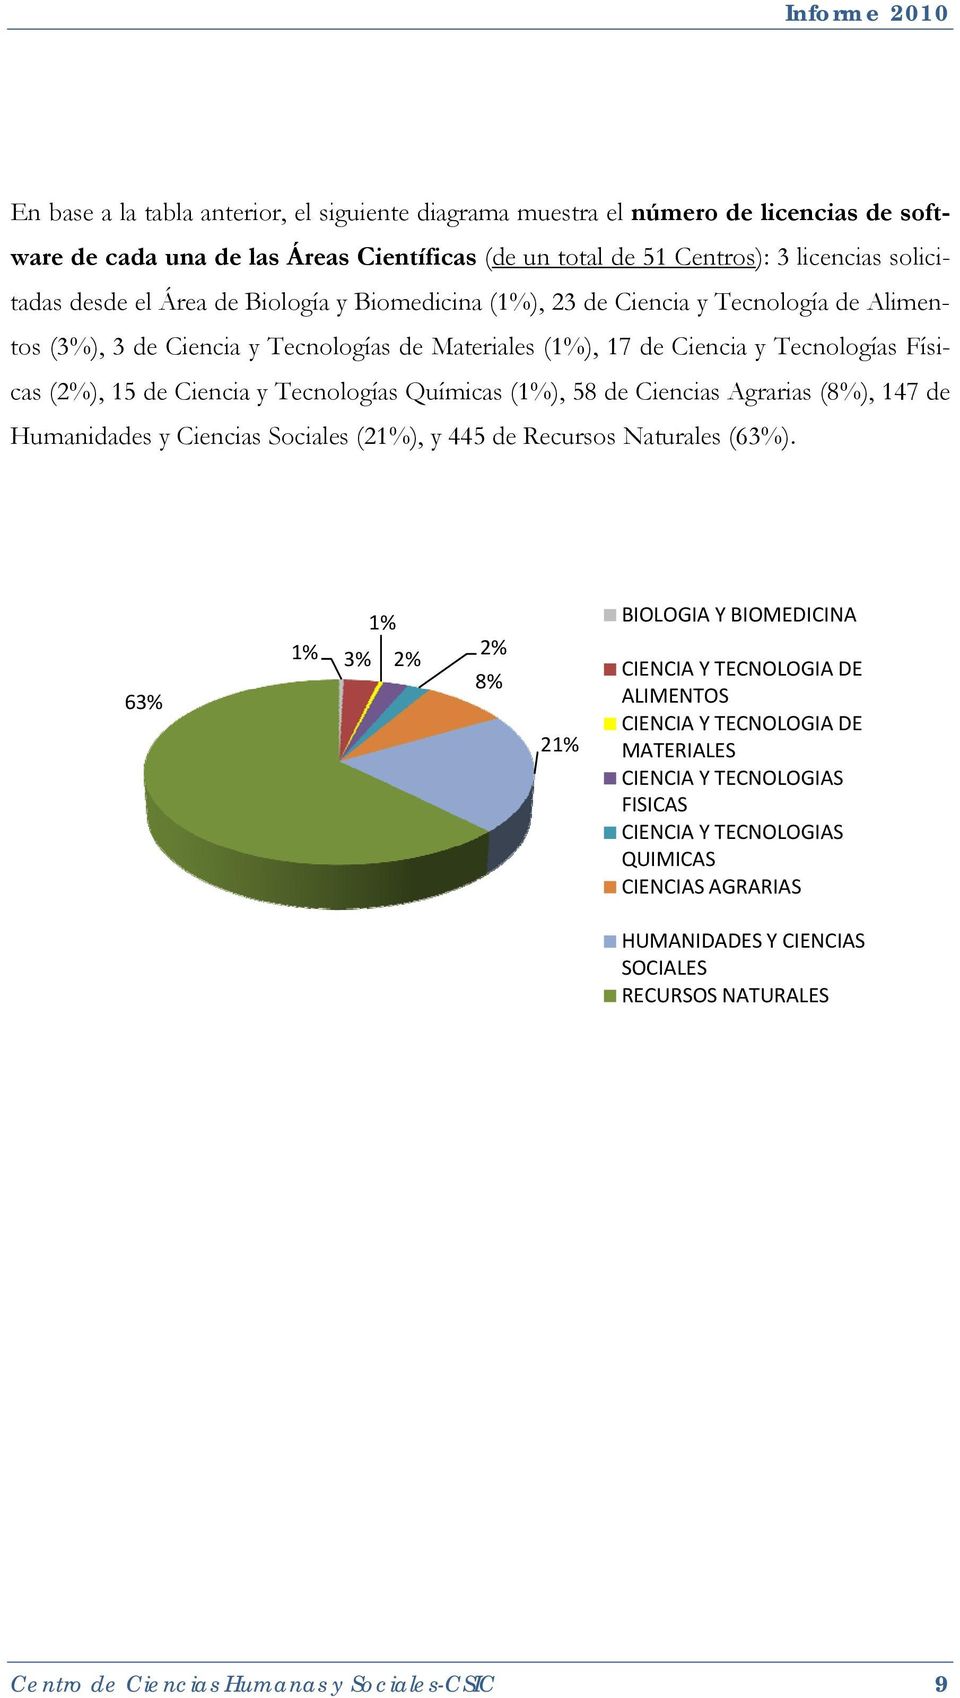 Químicas (), 58 de Ciencias Agrarias (8%), 147 de Humanidades y Ciencias Sociales (2), y 445 de Recursos Naturales (63%).